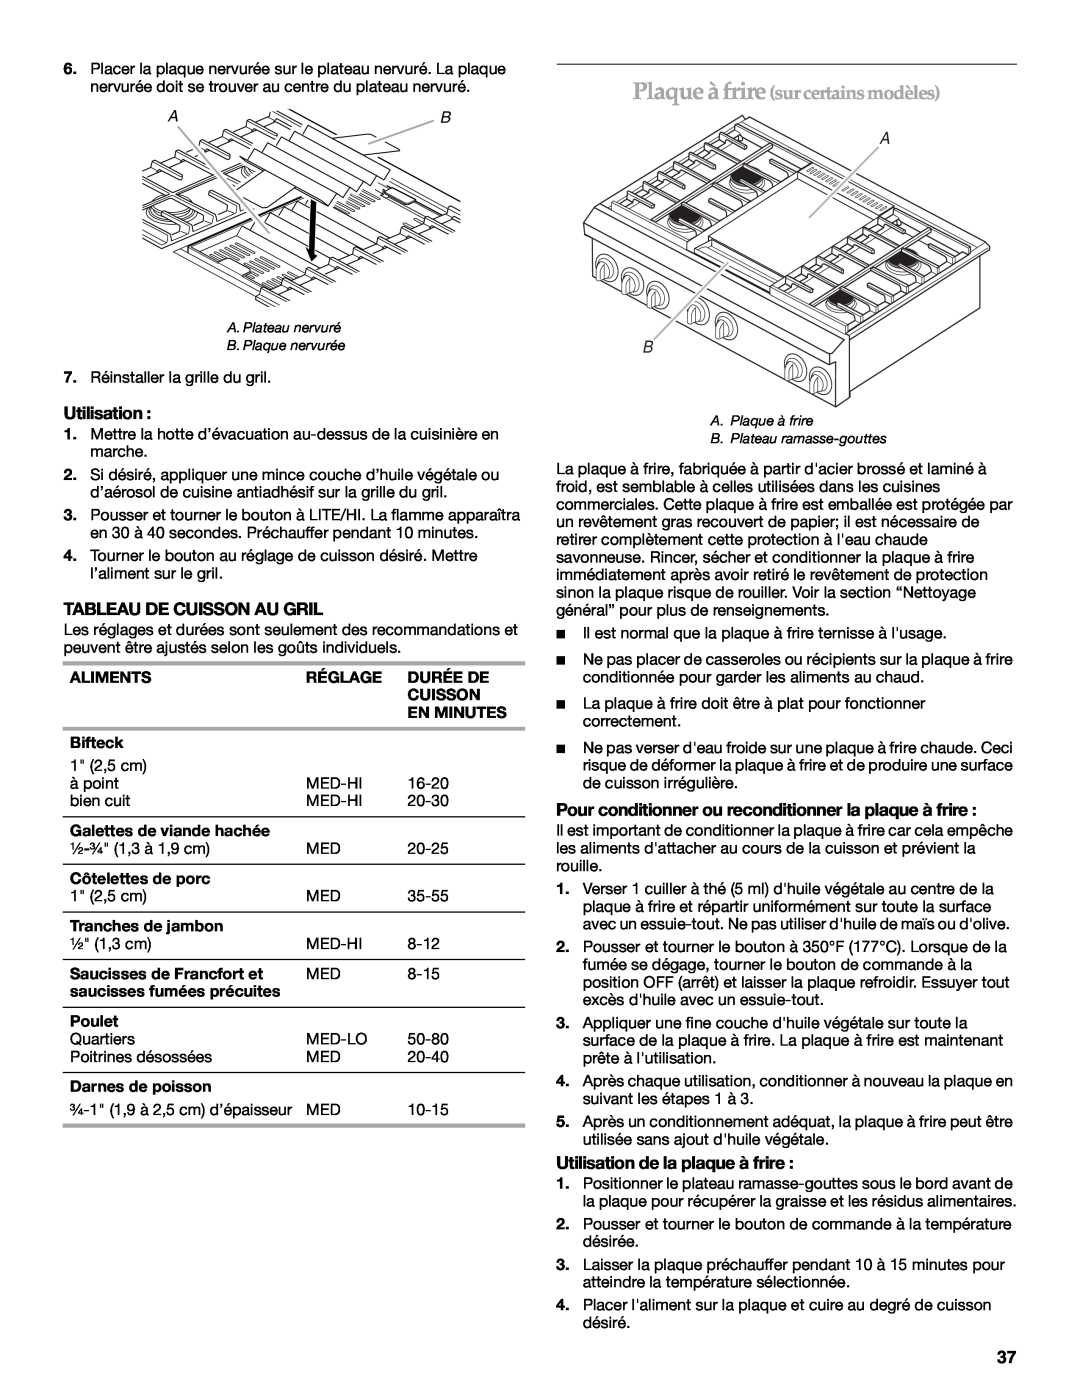 KitchenAid KDRP407 KDRP462 manual Plaque à friresur certains modèles, Utilisation, Tableau De Cuisson Au Gril 